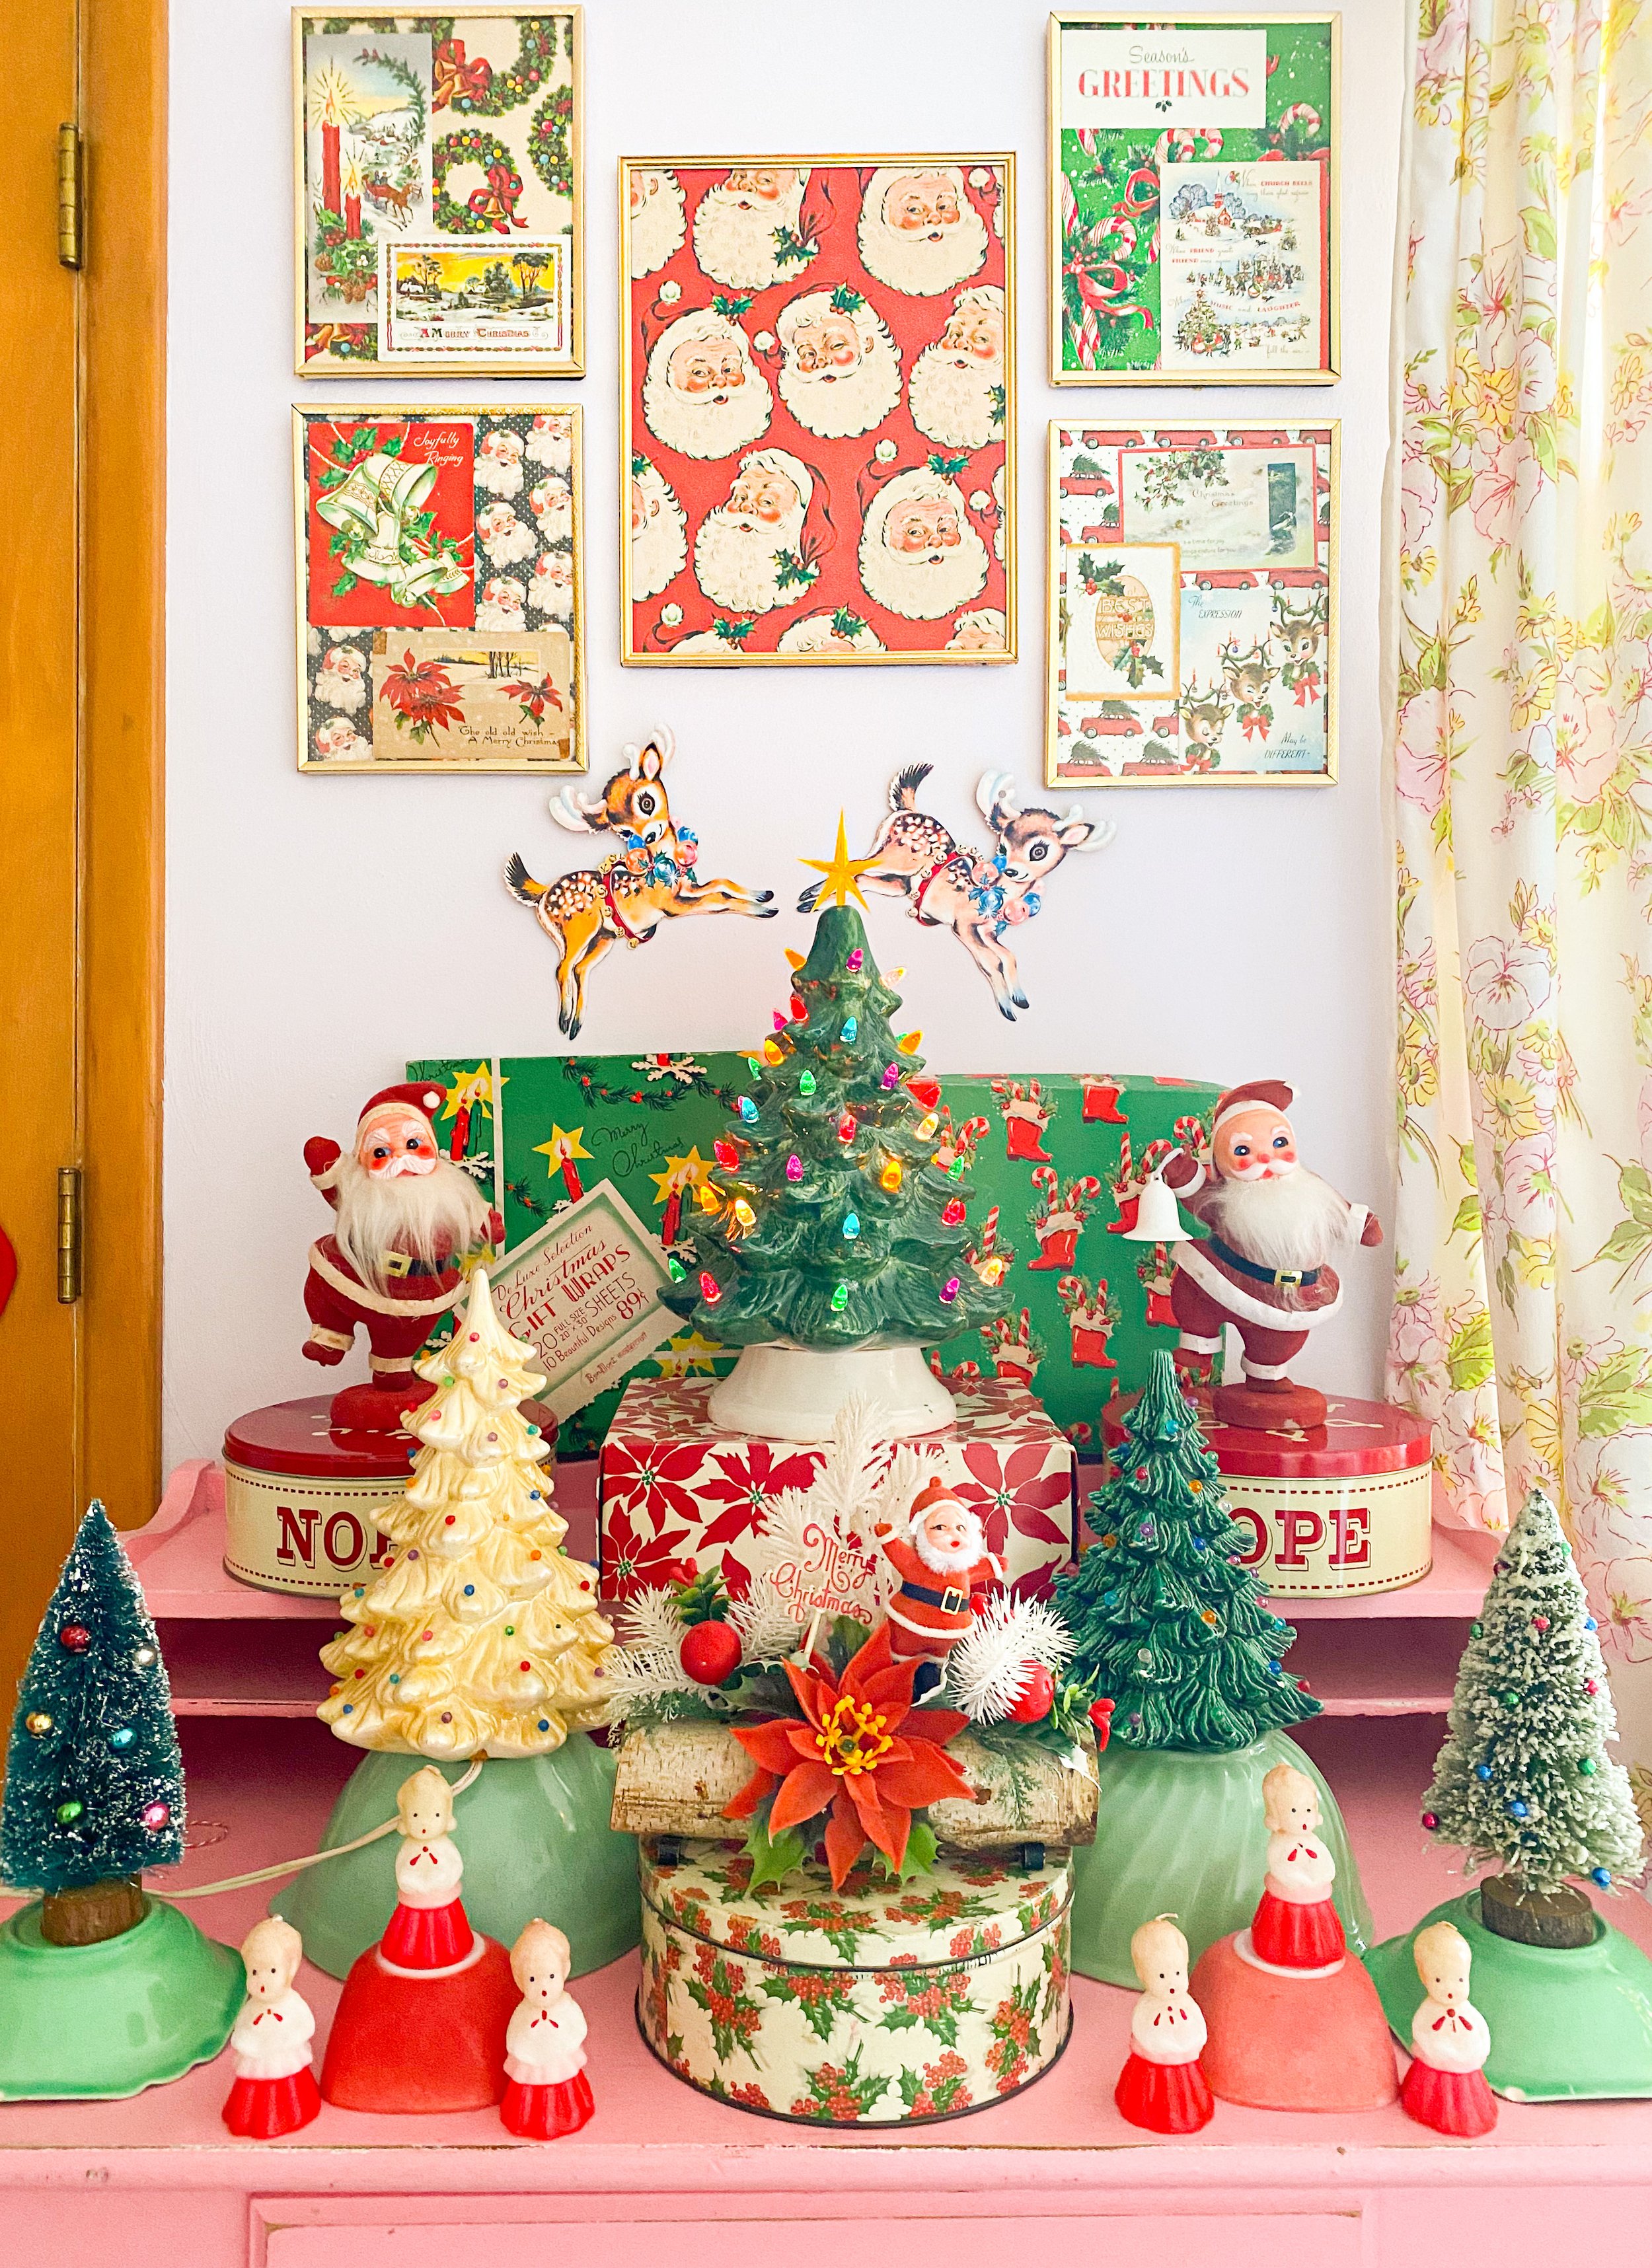 Vintage 1950s Kitsch Christmas Home Decor - Retro 1950s Decor Inspiration —  Emily Retro - Vintage and DIY Home Design